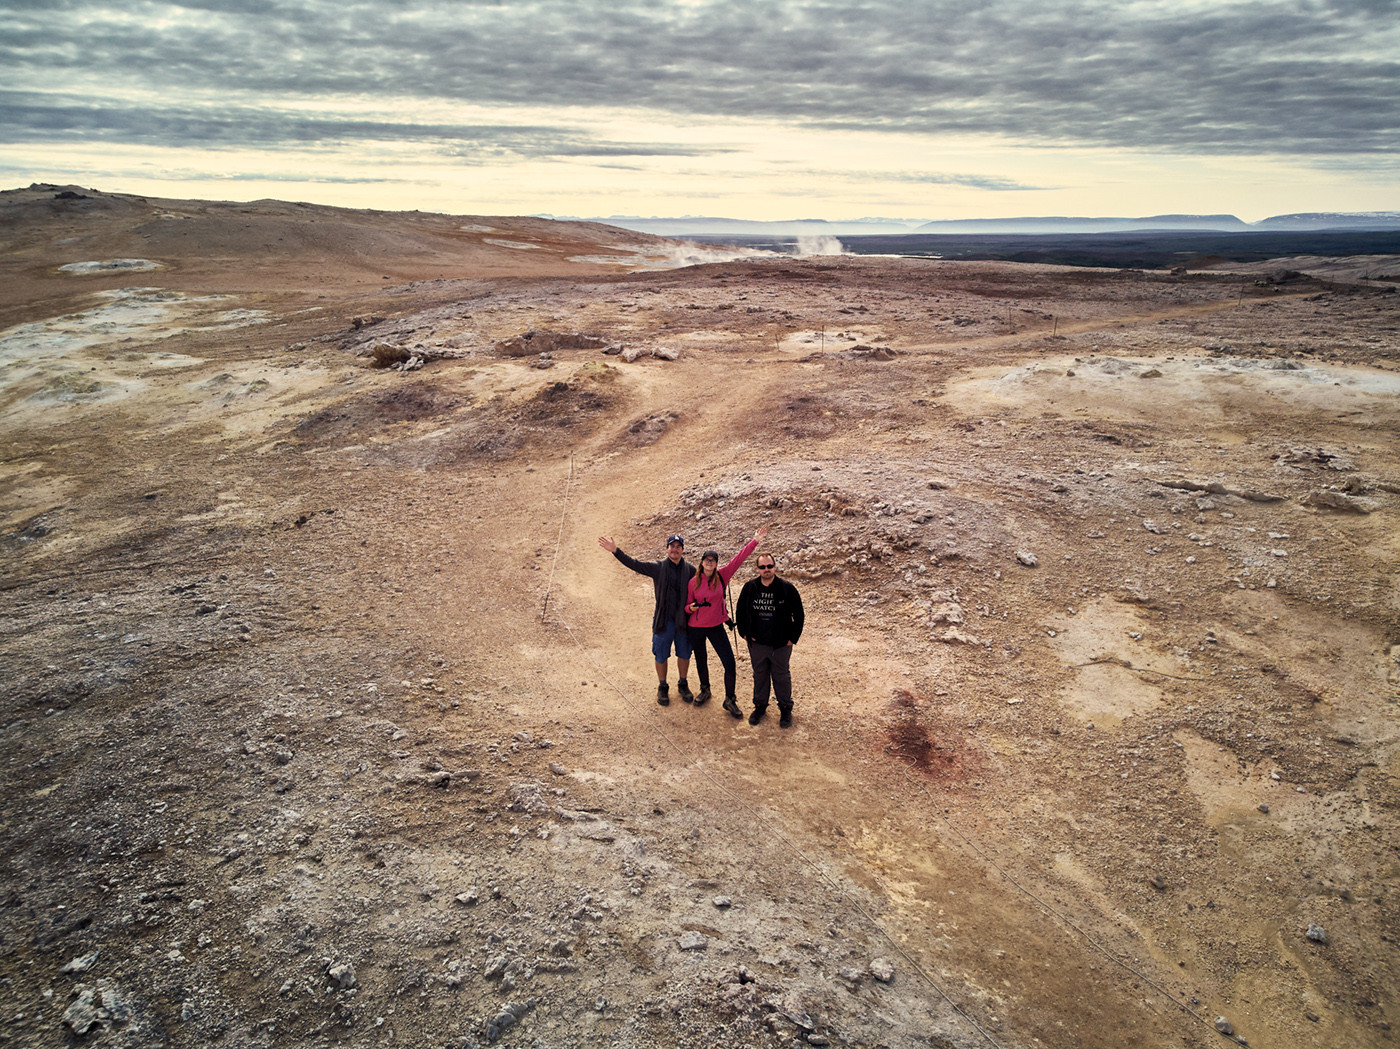 Selfie, Dronie, Drohnenfoto auf dem Namajfall Berg in Island